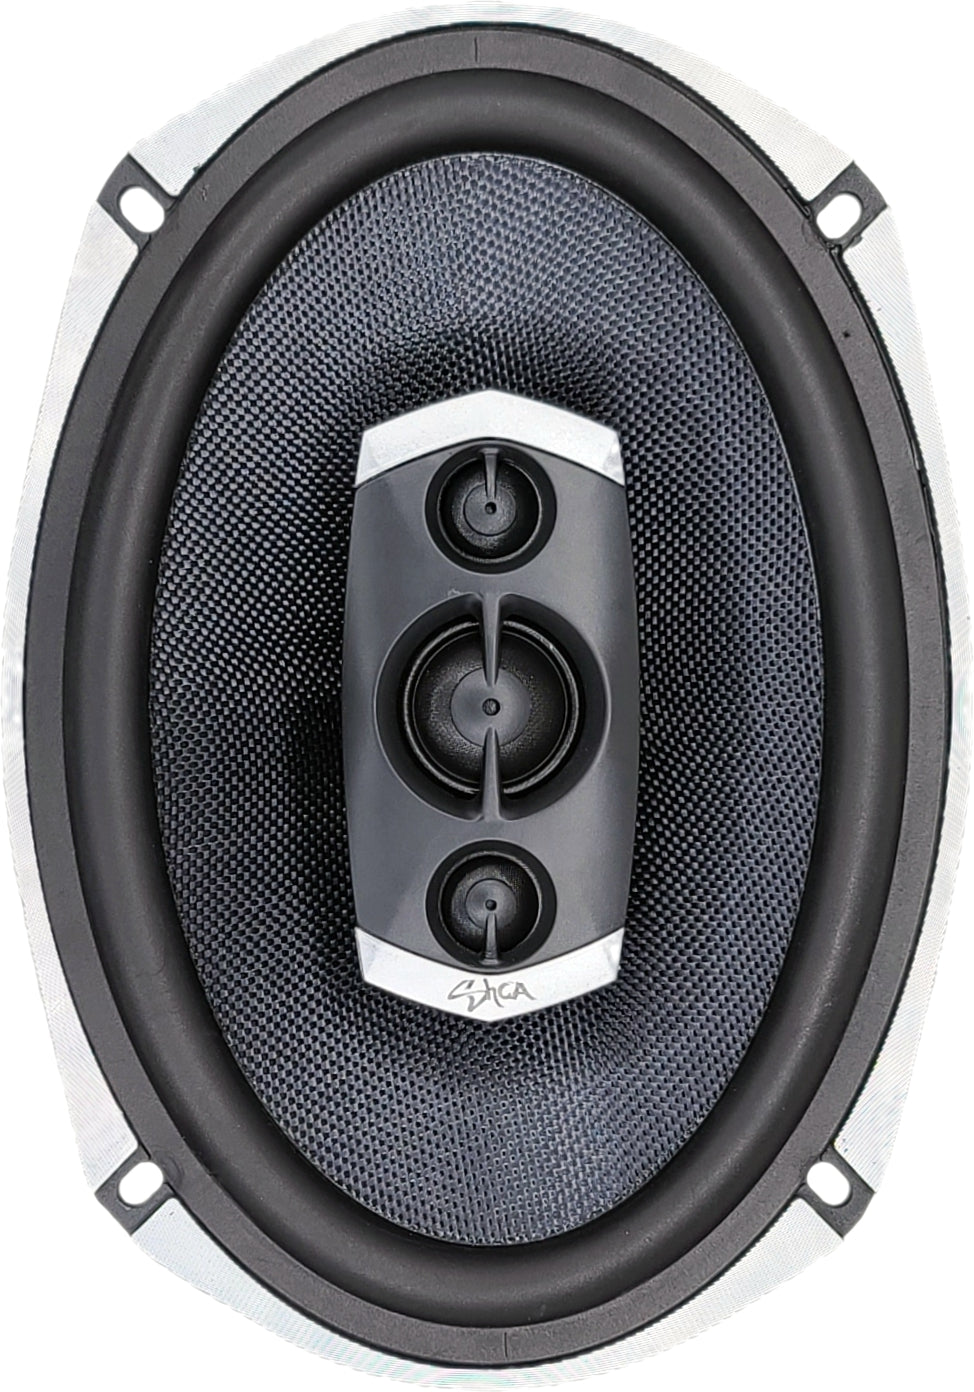 SHCA SH-C694 6x9" 4-way Coaxial Speaker (Pair)